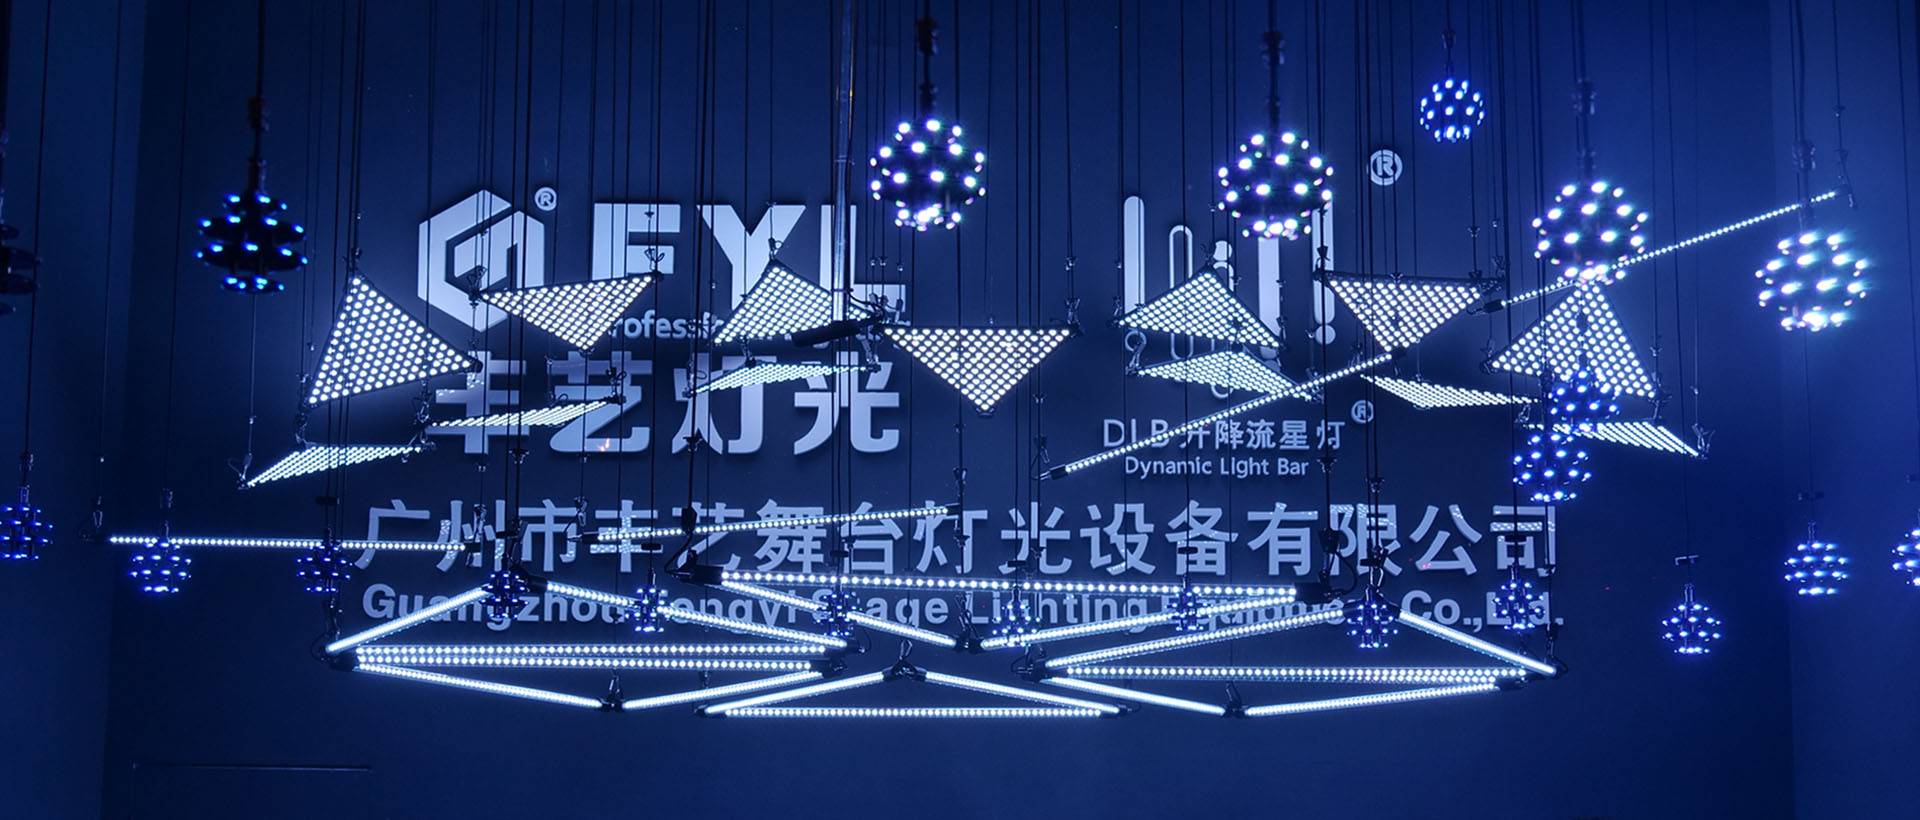 2020 Guangzhou Prolight & Sound Exhibition